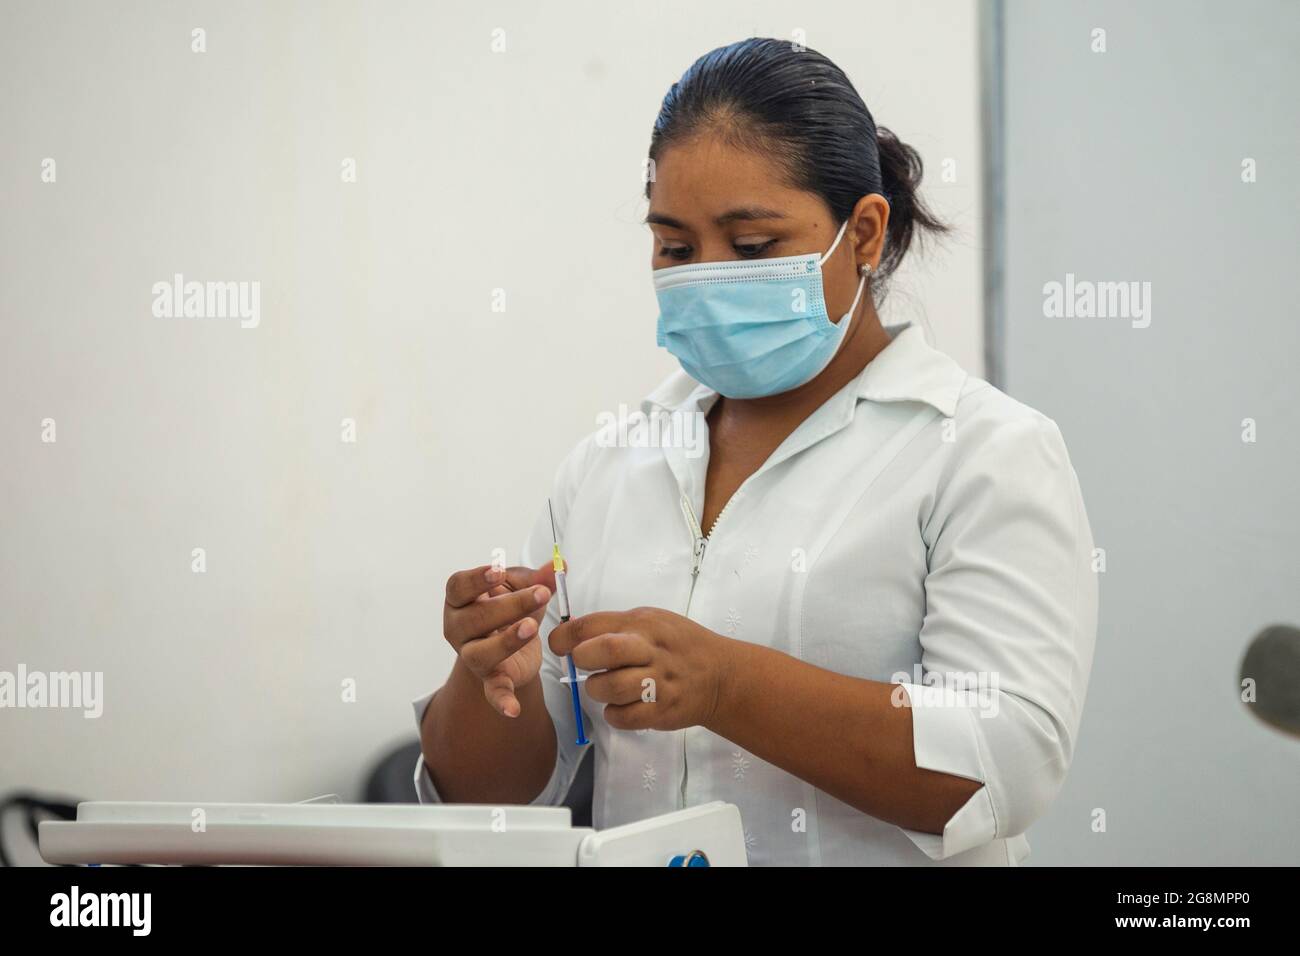 Playa del Carmen, México, 21 de julio de 2021: Una persona recibe una vacuna Covid-19, contra el SARS-CoV-2 que causa la enfermedad de Coronavirus, durante la campaña de vacunación doméstica para personas de 30-39 años de edad. Crédito: Natalia Pescador / Grupo Eyepix / Alamy Live News Foto de stock